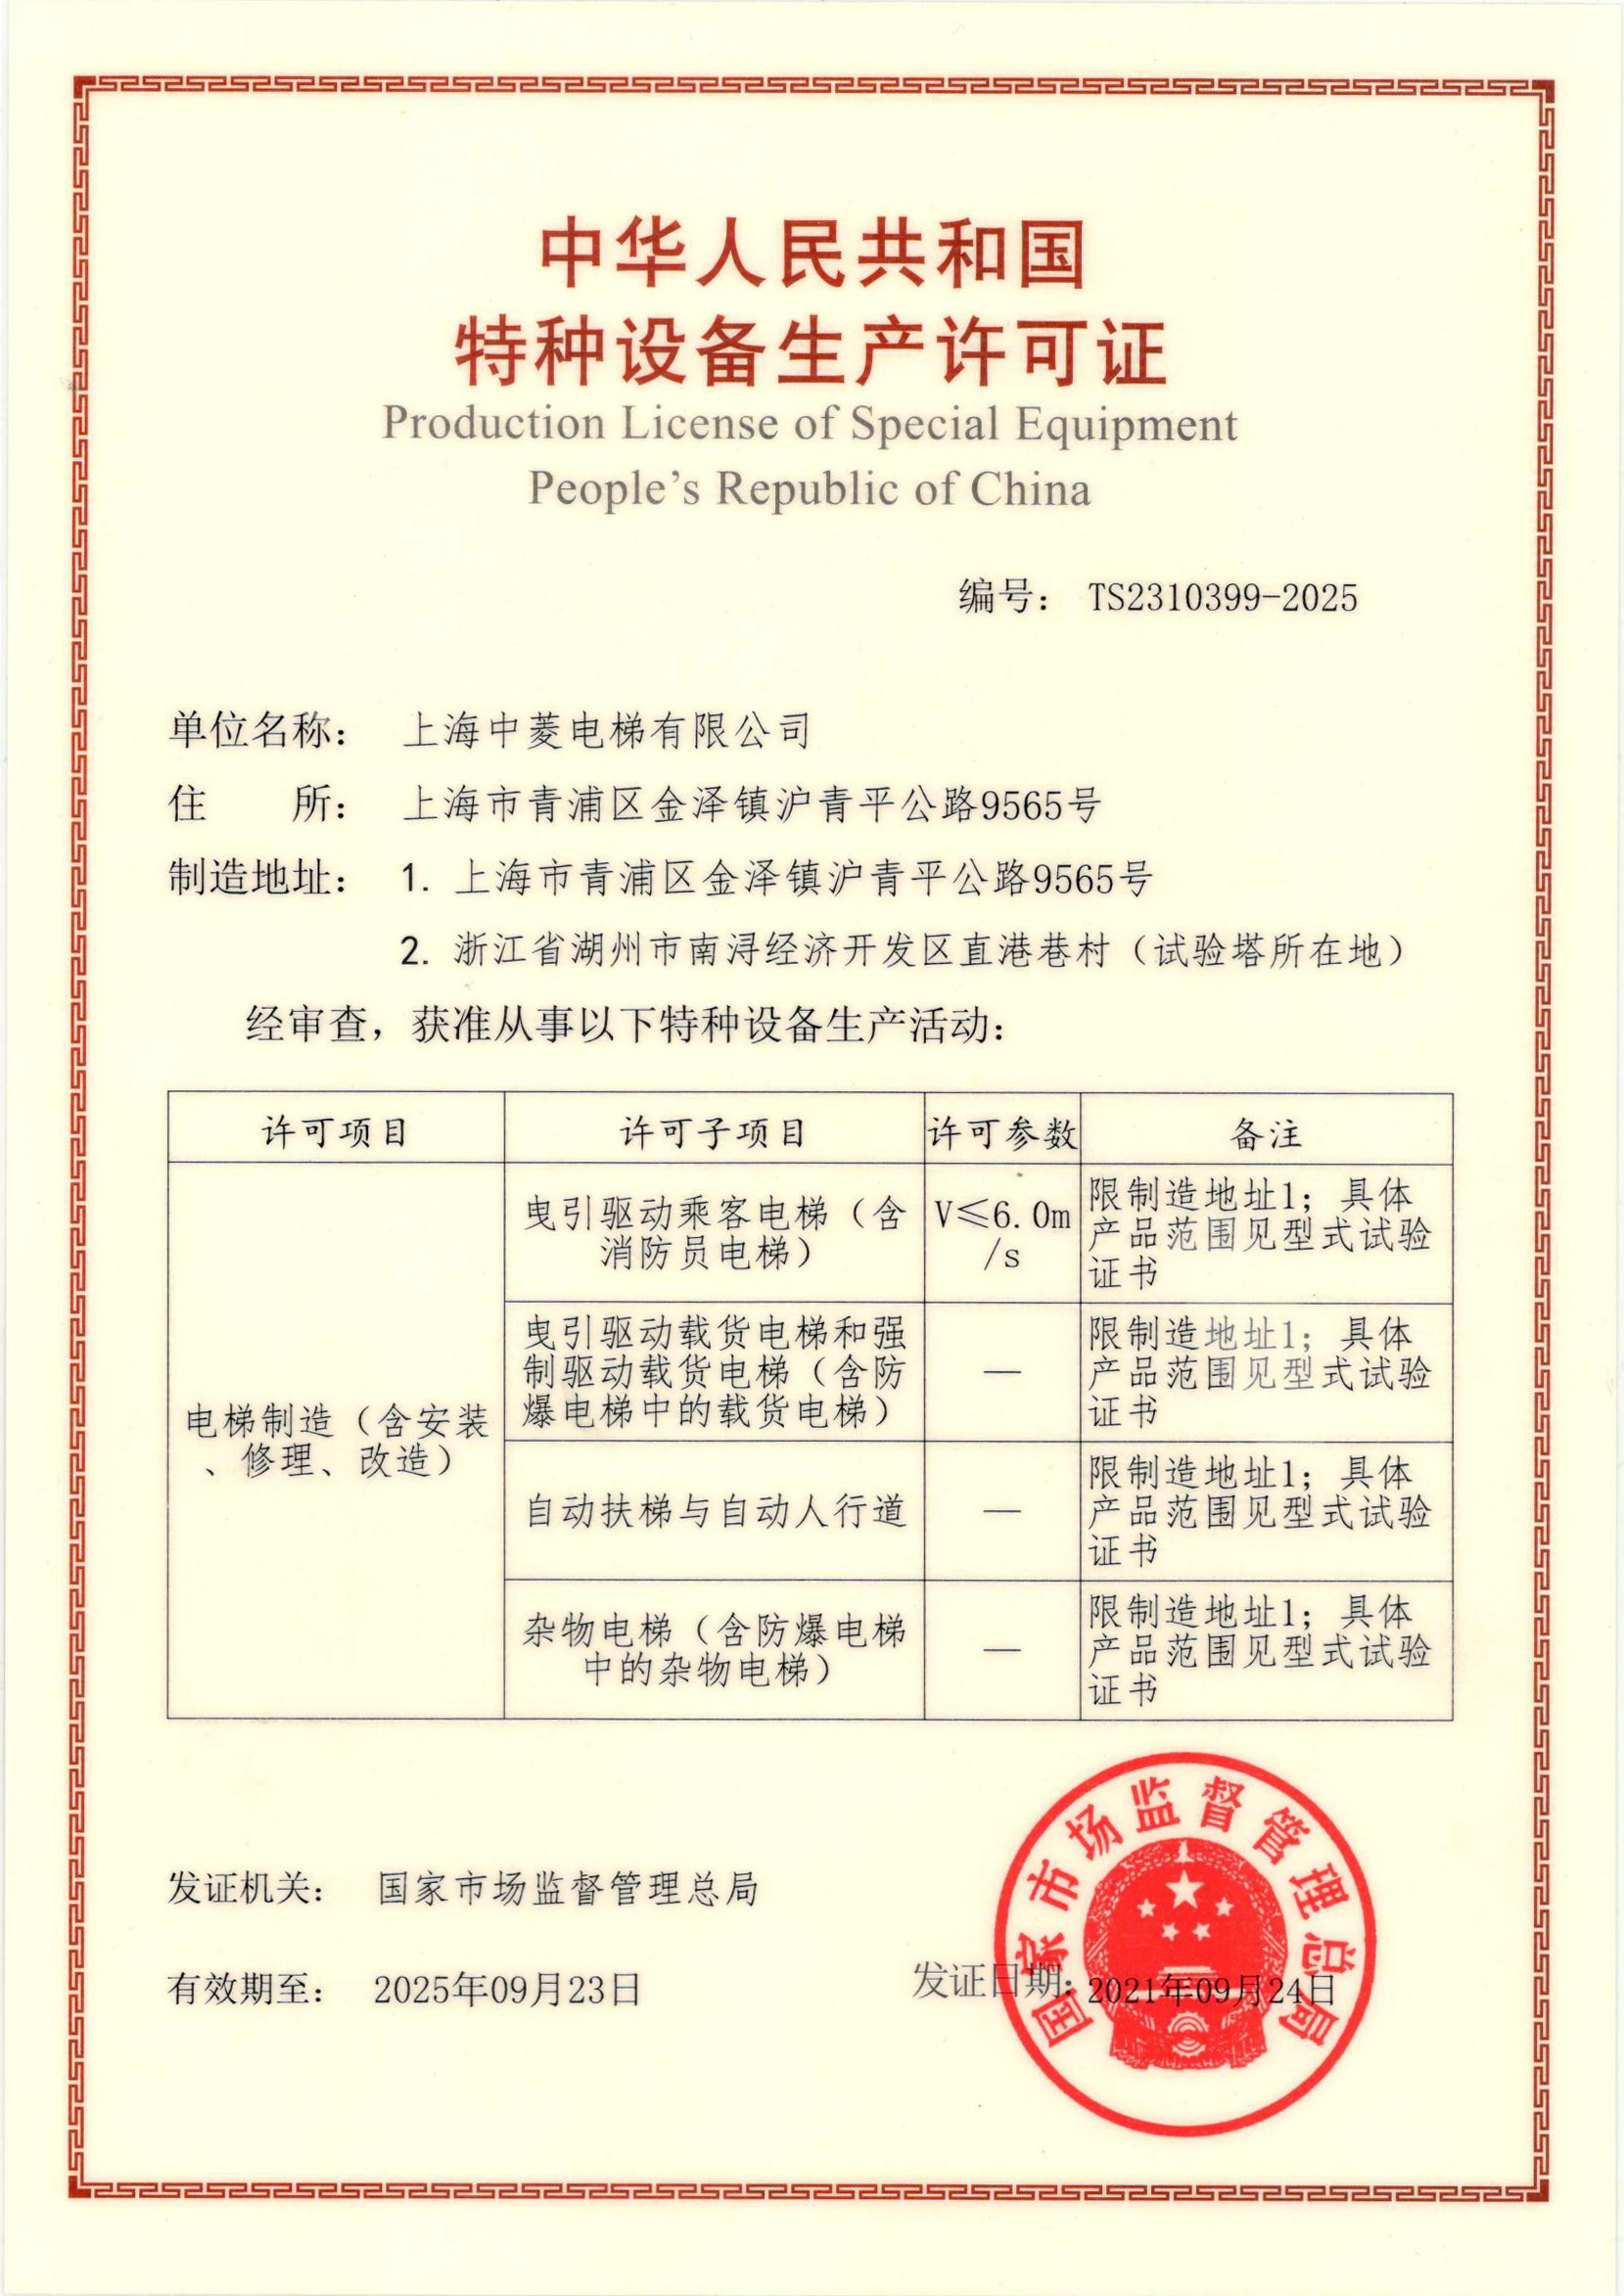 上海中菱电梯-特种设备生产许可证TS2310399-2025（正本）.jpg